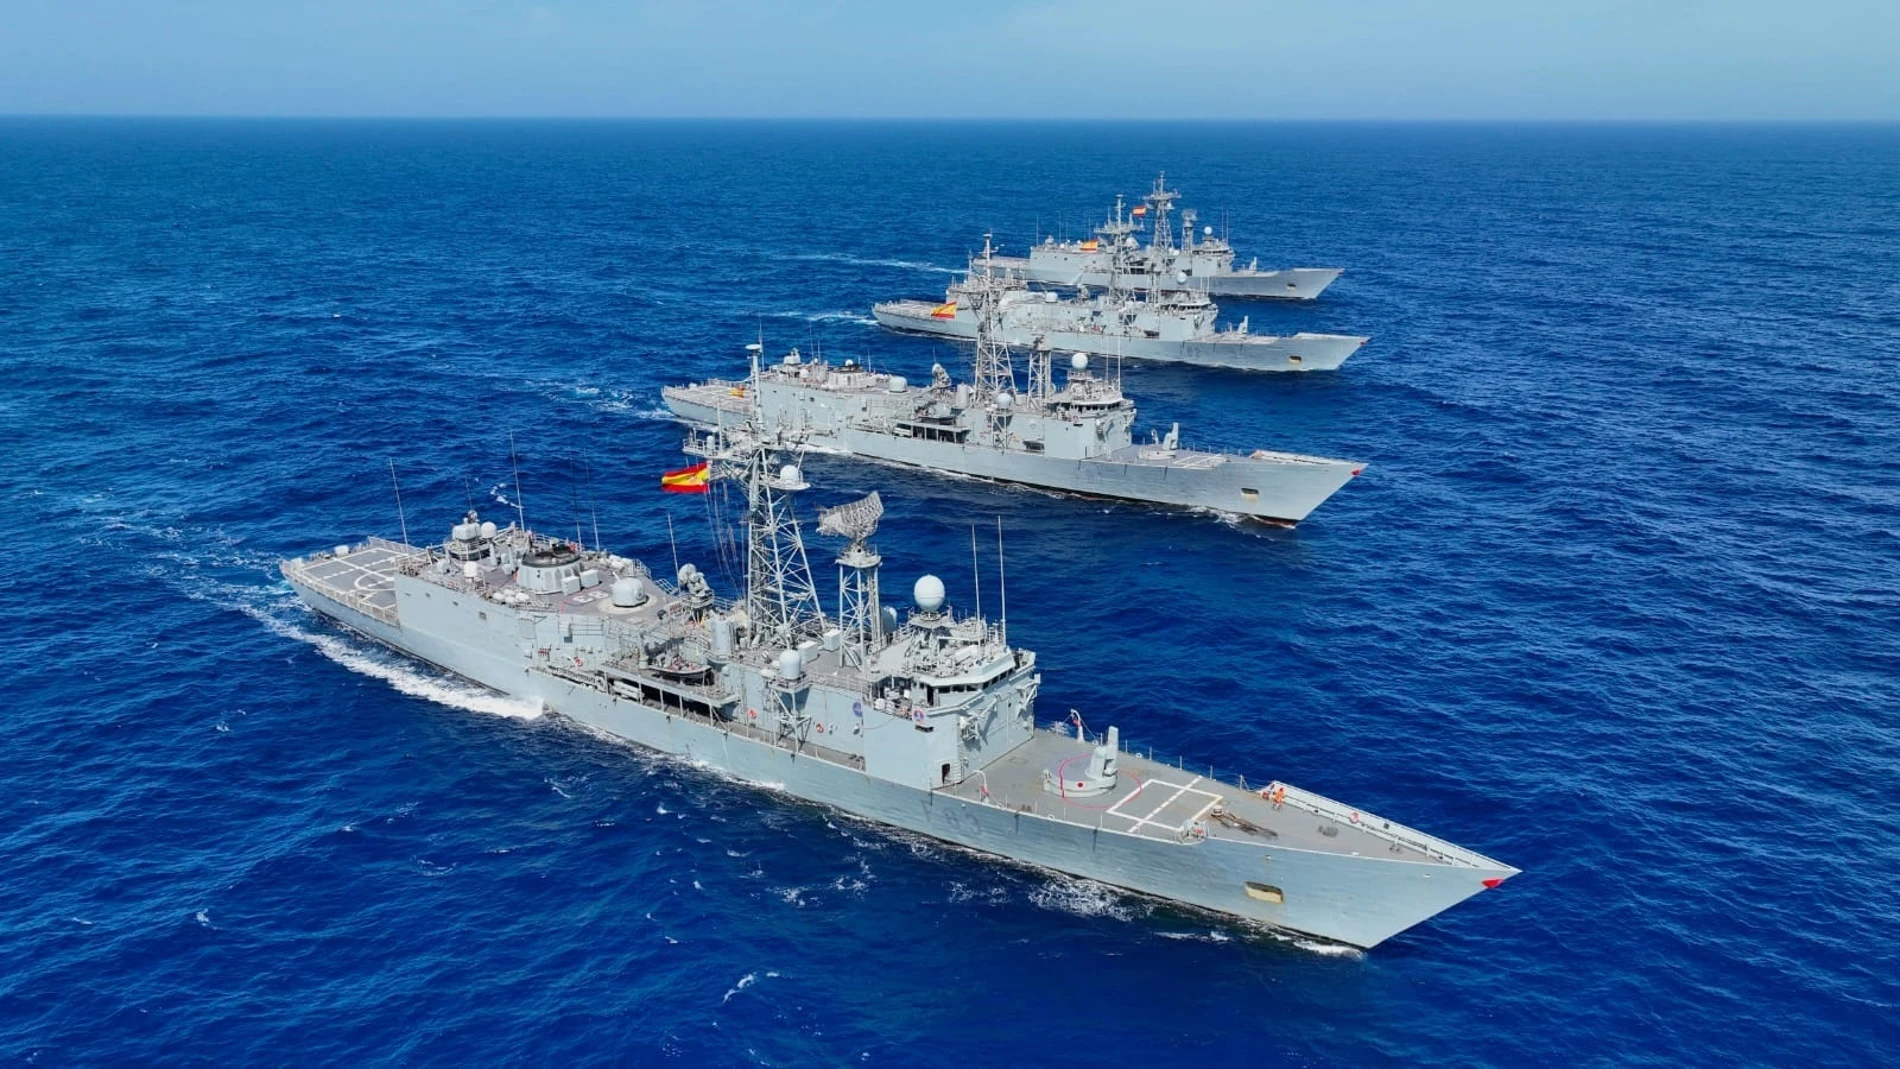 Fragatas de la Armada Española